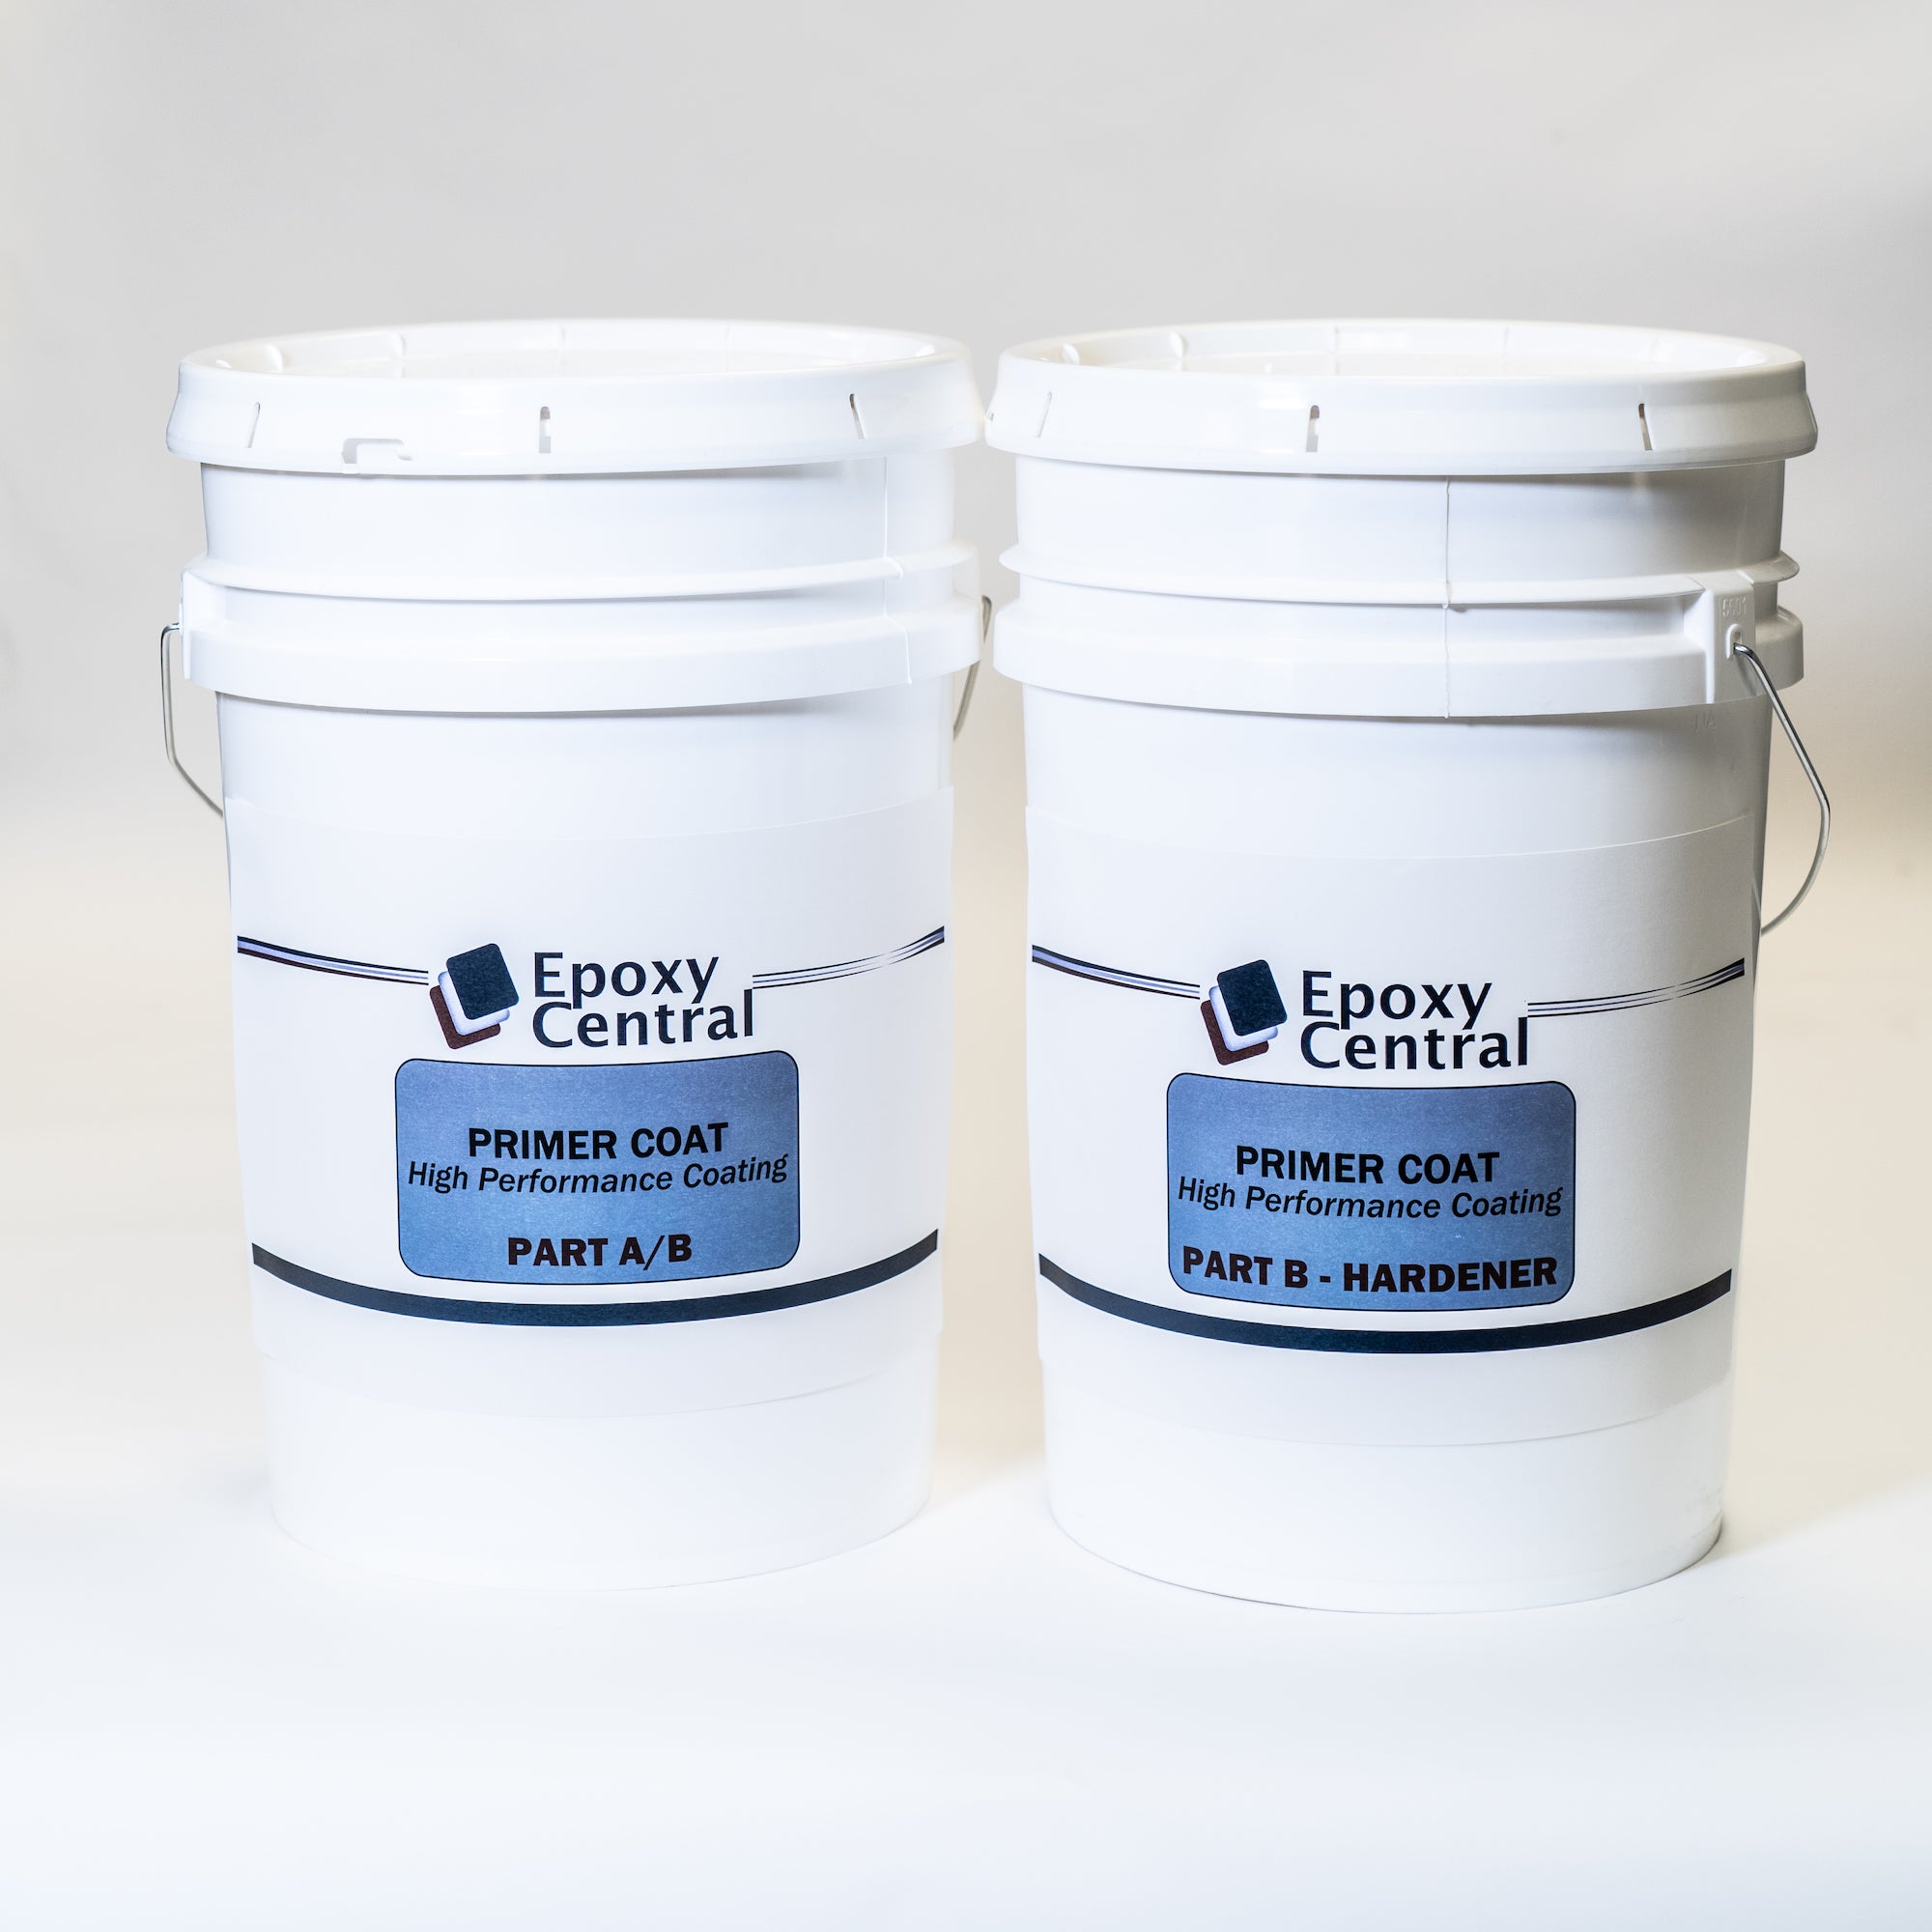 Clear Epoxy Coat 154 - Excellent concrete primer for various